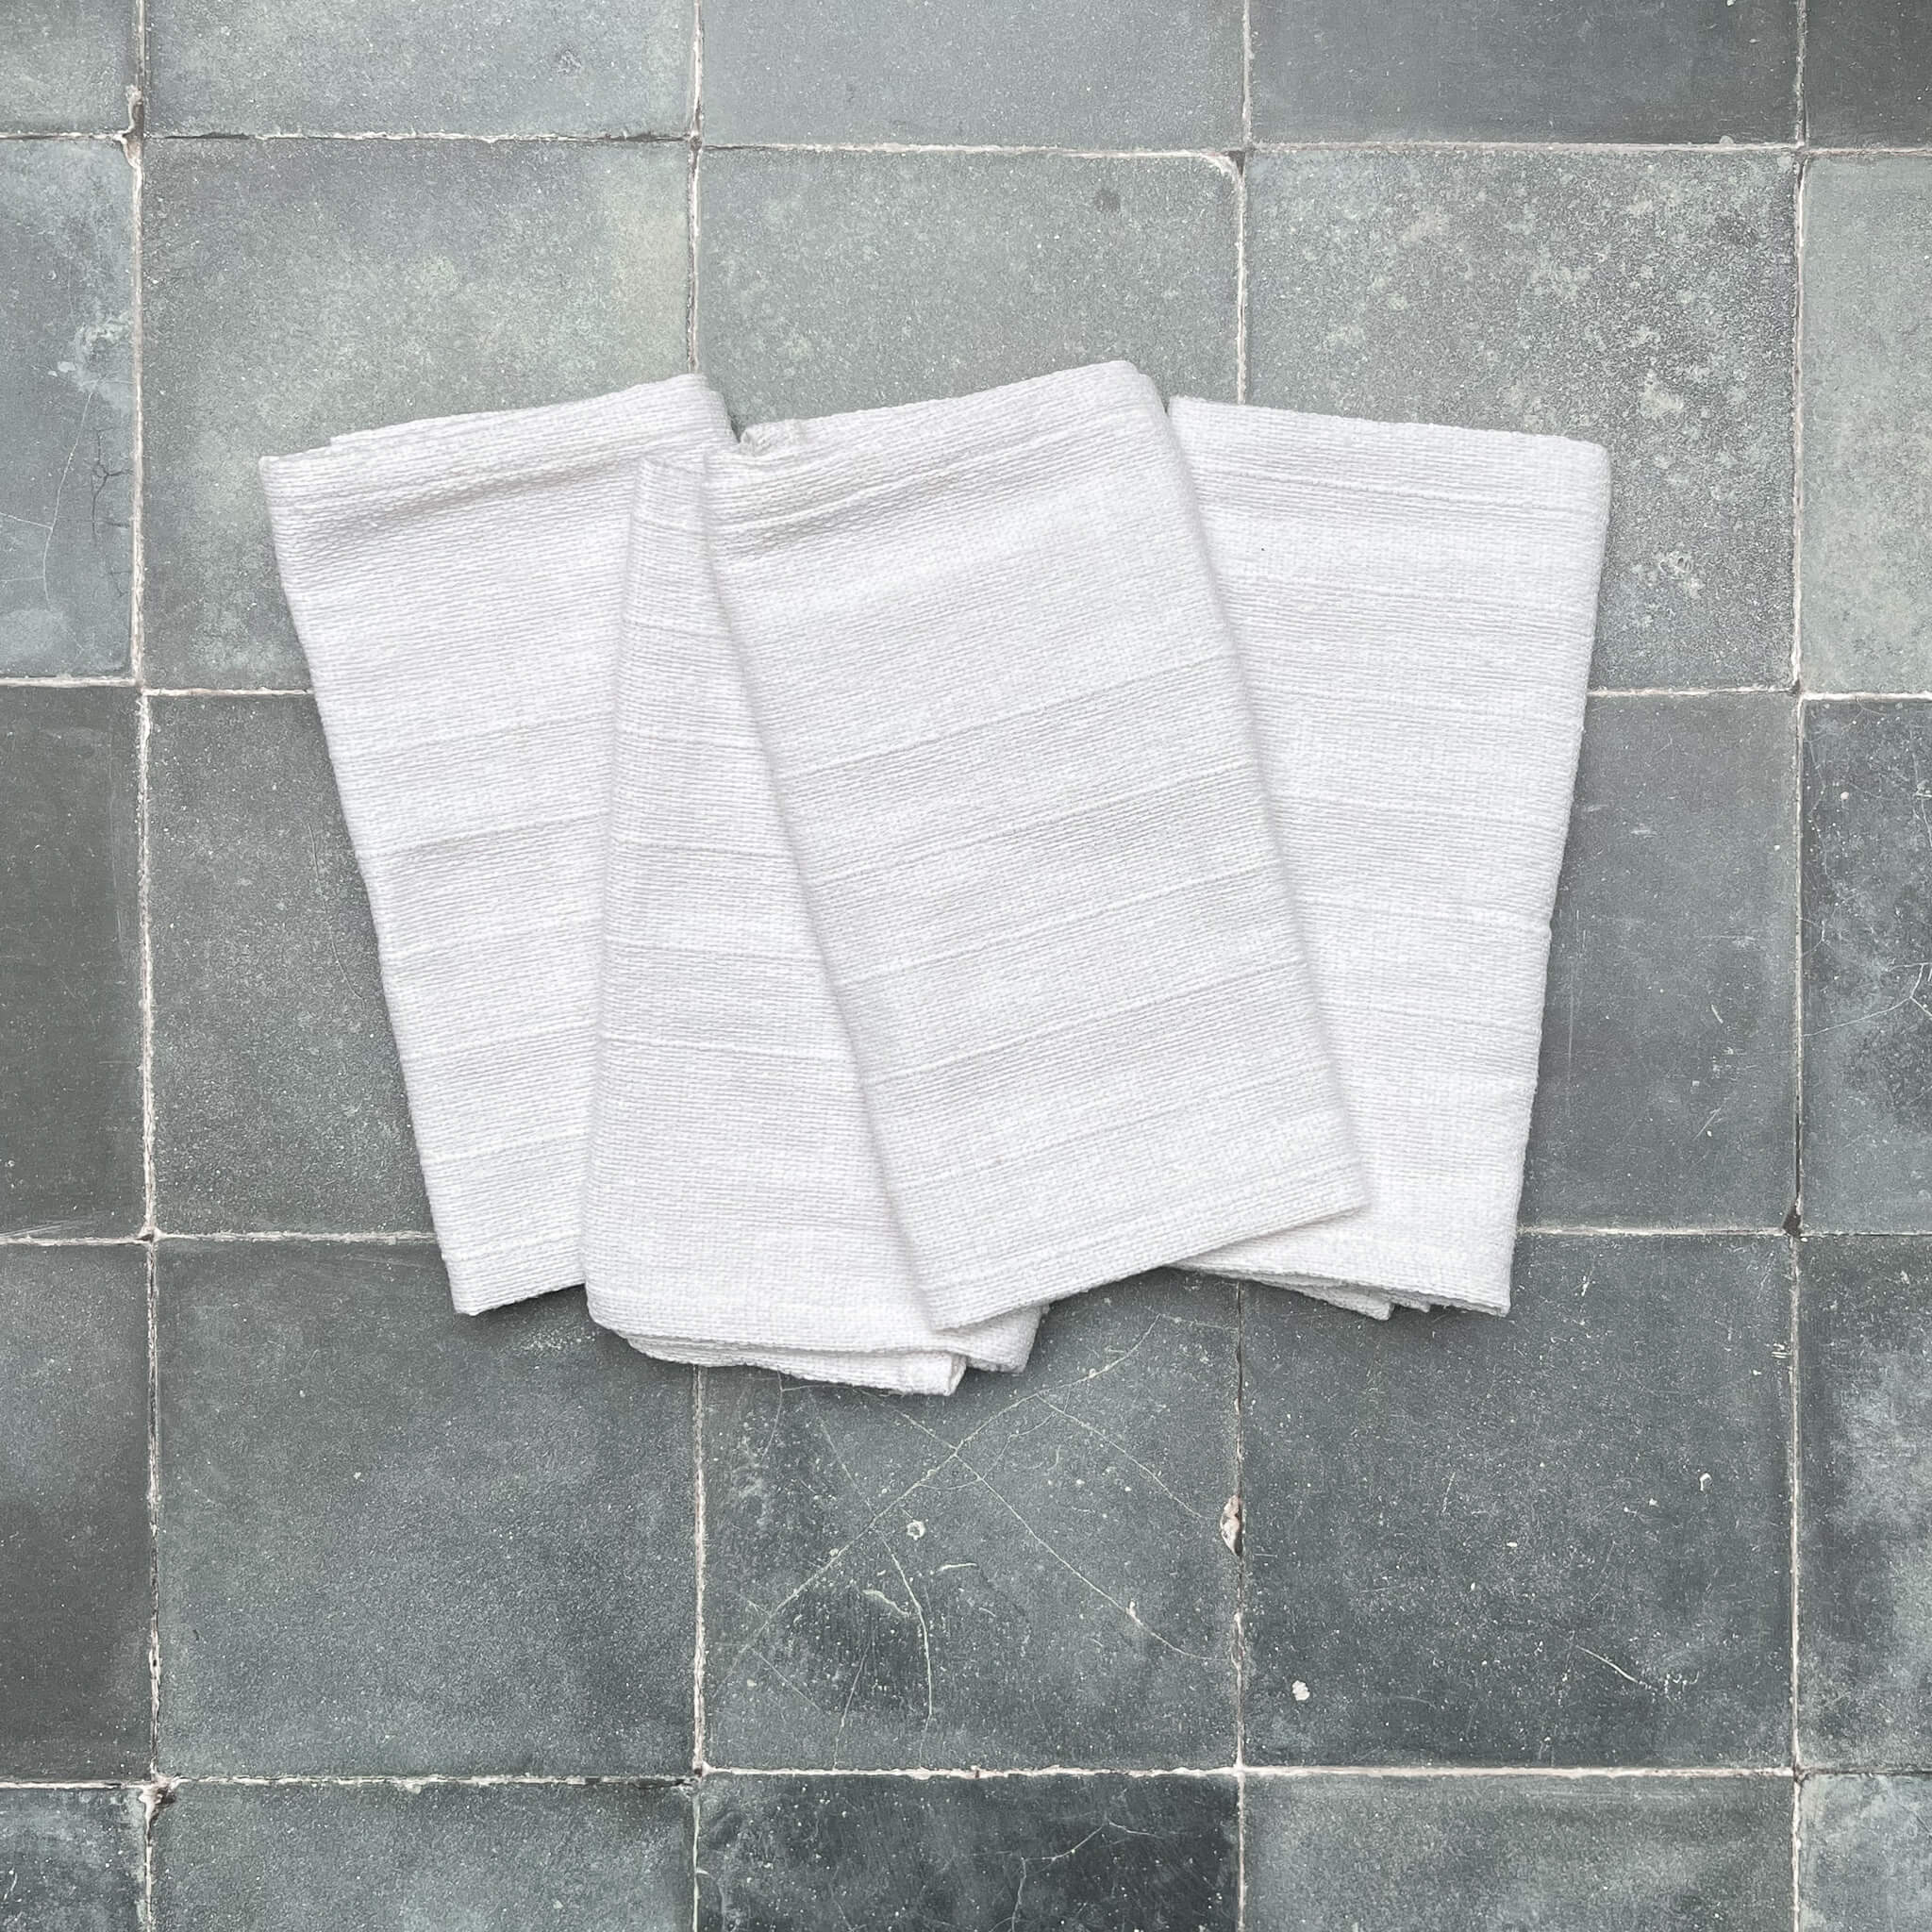 Set of 4 Oaxaca cotton napkins featuring white on white design.